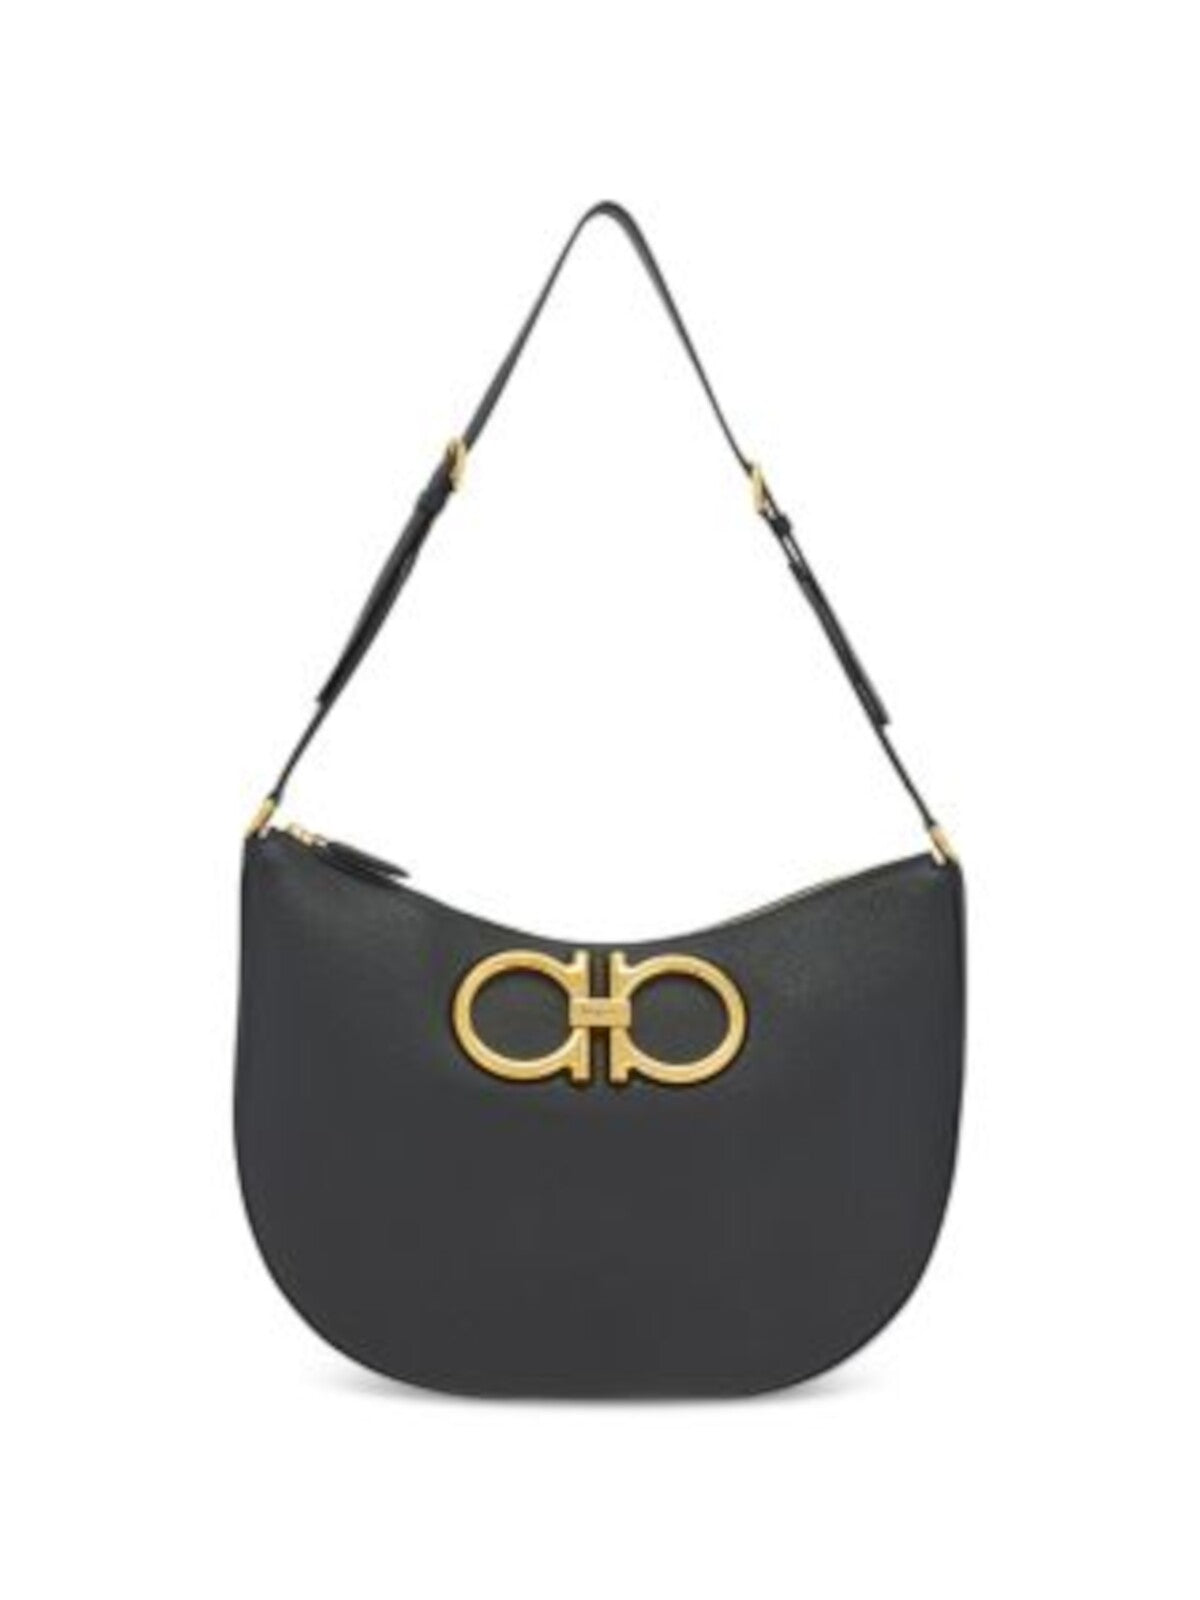 SALVATORE FERRAGAMO Women's Black Solid Suede Logo Hardware Adjustable Strap Hobo Handbag Purse